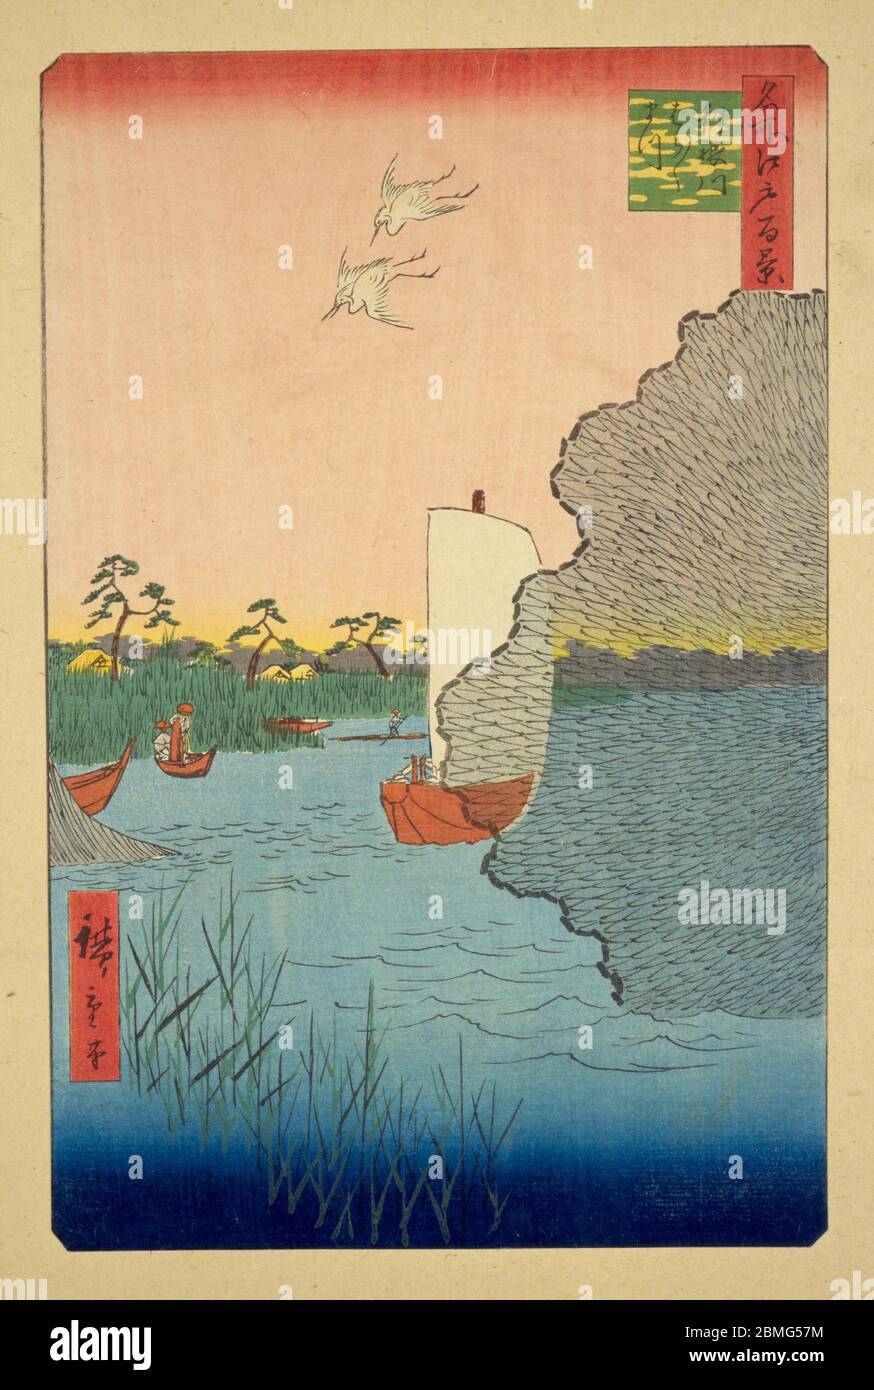 [ 1850er Japan - Tonegawa River Fishermen ] - Fischer am Tonegawa River in Edo (heute Tokio), 1856 (Ansei 3). Dieser Holzschnitt ist Bild 71 in hundert berühmten Ansichten von Edo (名所江戸百景, Meisho Edo Hyakkei), einer Serie von Ukiyoe Künstler Utagawa Hiroshige (歌川広重, 1797–1858) erstellt. Es ist eine von 30 Sommerszenen der Serie. Titel: Verstreute Pines on the Tone River (利根川ばらばらまつ, Tonegawa barabara-matsu) Vintage-Holzschnitt aus dem 19. Jahrhundert. Stockfoto